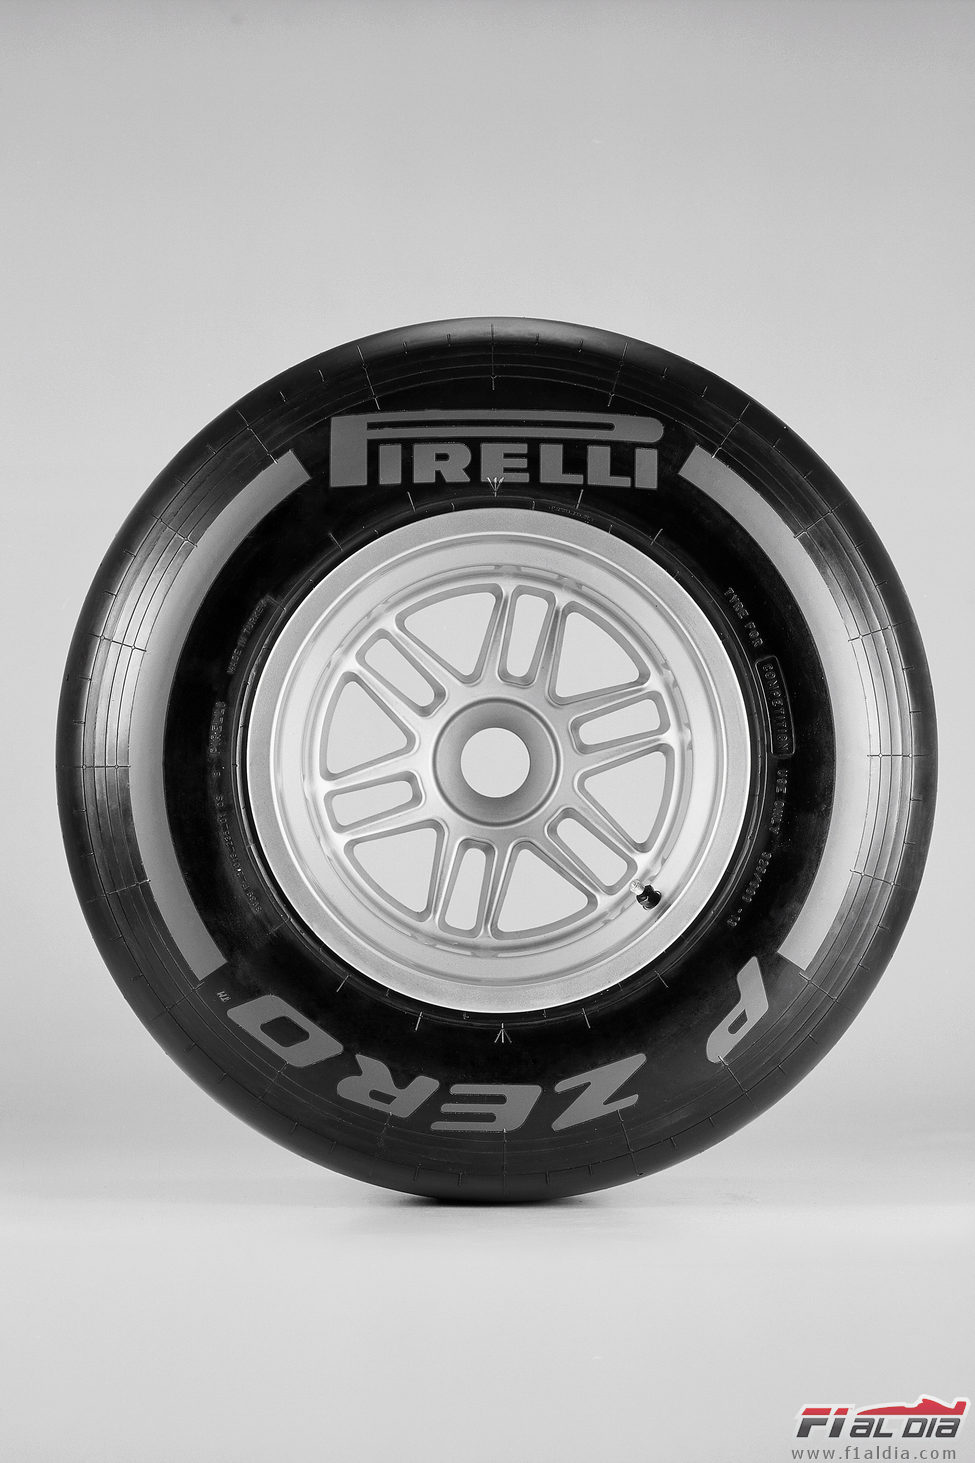 Pirelli 2012: duro (frontal)